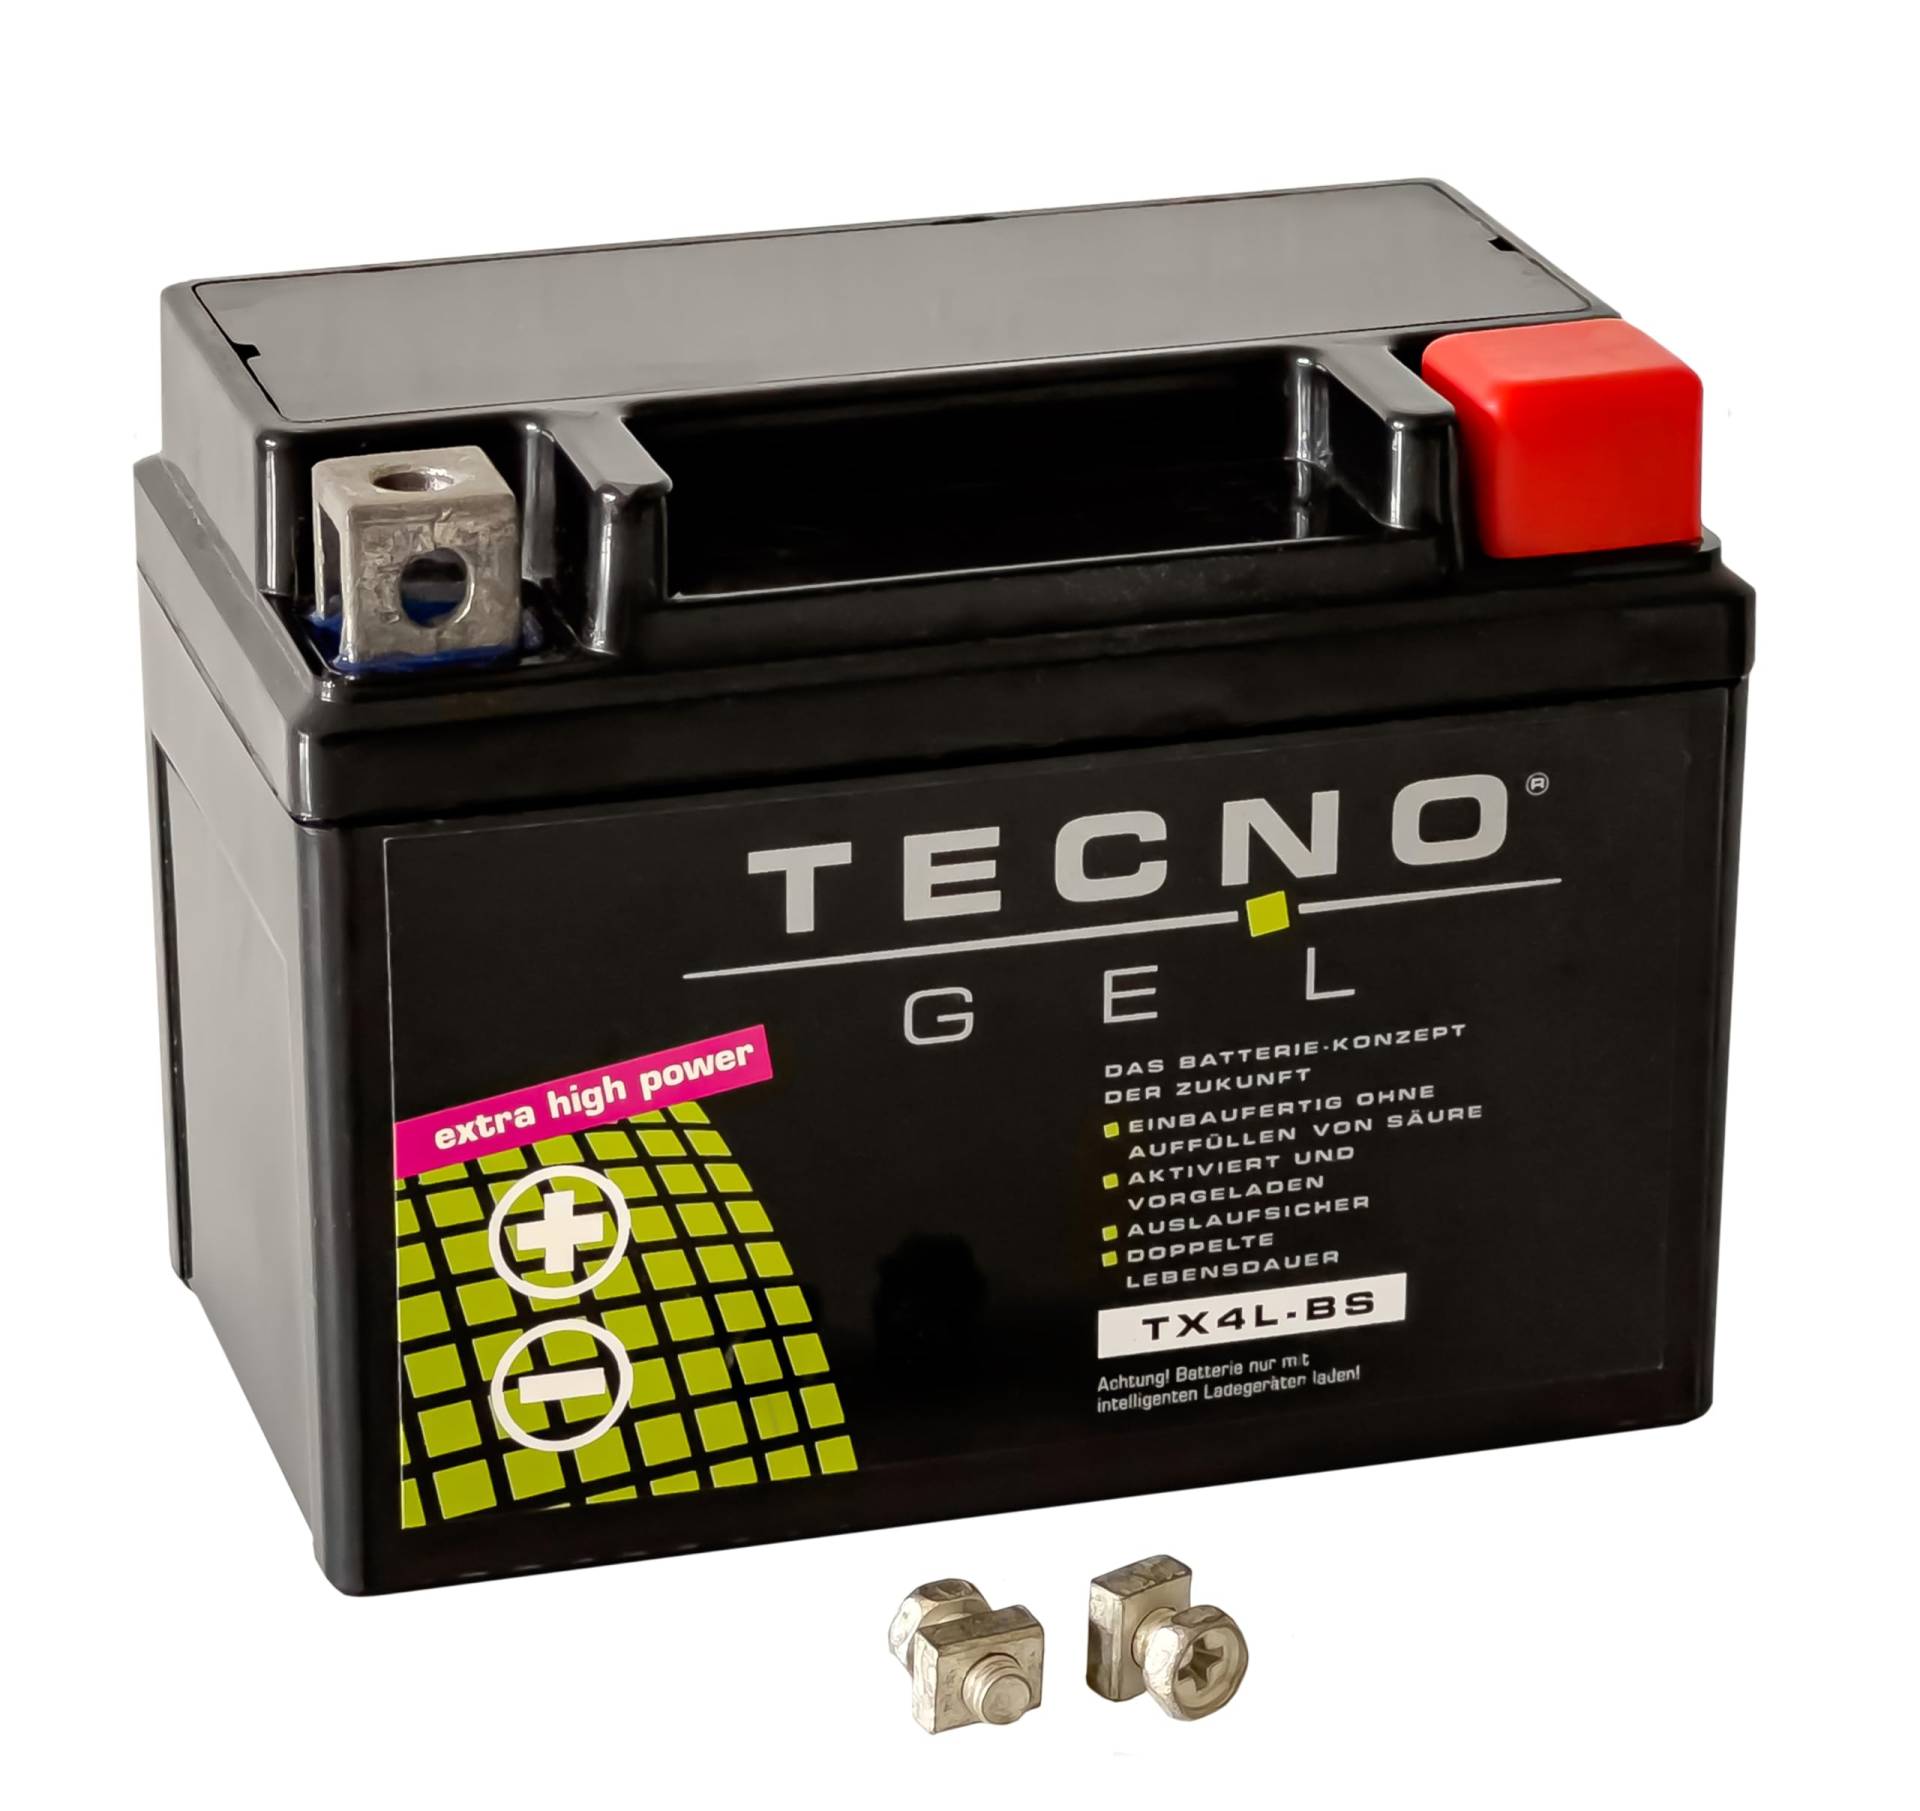 TECNO-GEL Motorrad-Batterie für YTX4L-BS, 12V Gel-Batterie 4Ah (DIN 50314), 114x69x87 mm von Wirth-Federn